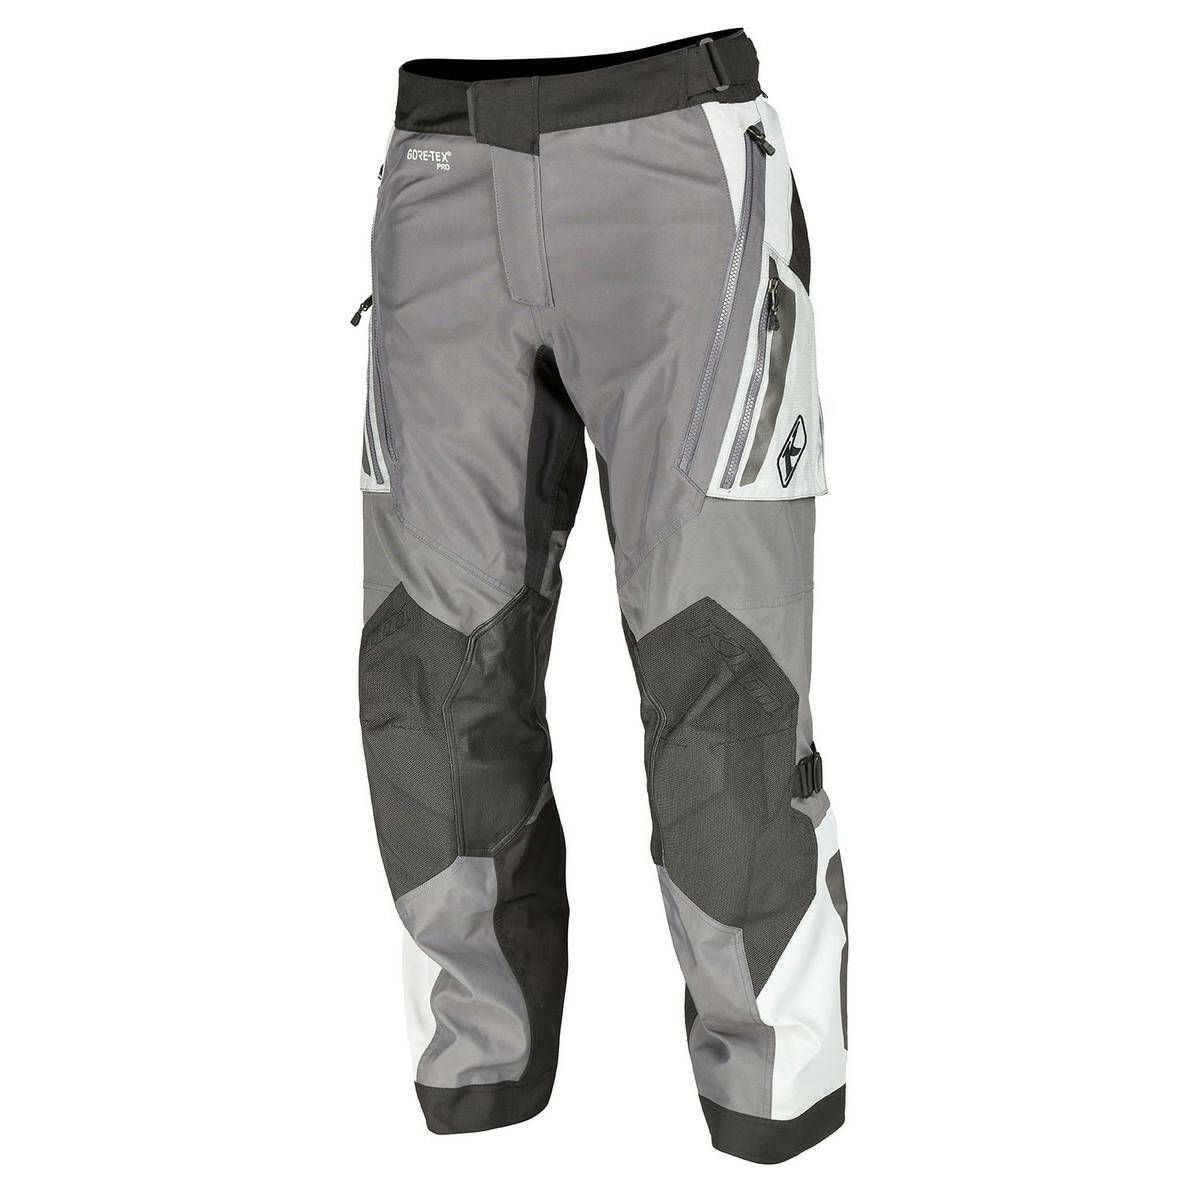 GORE-TEX motorcycle pants